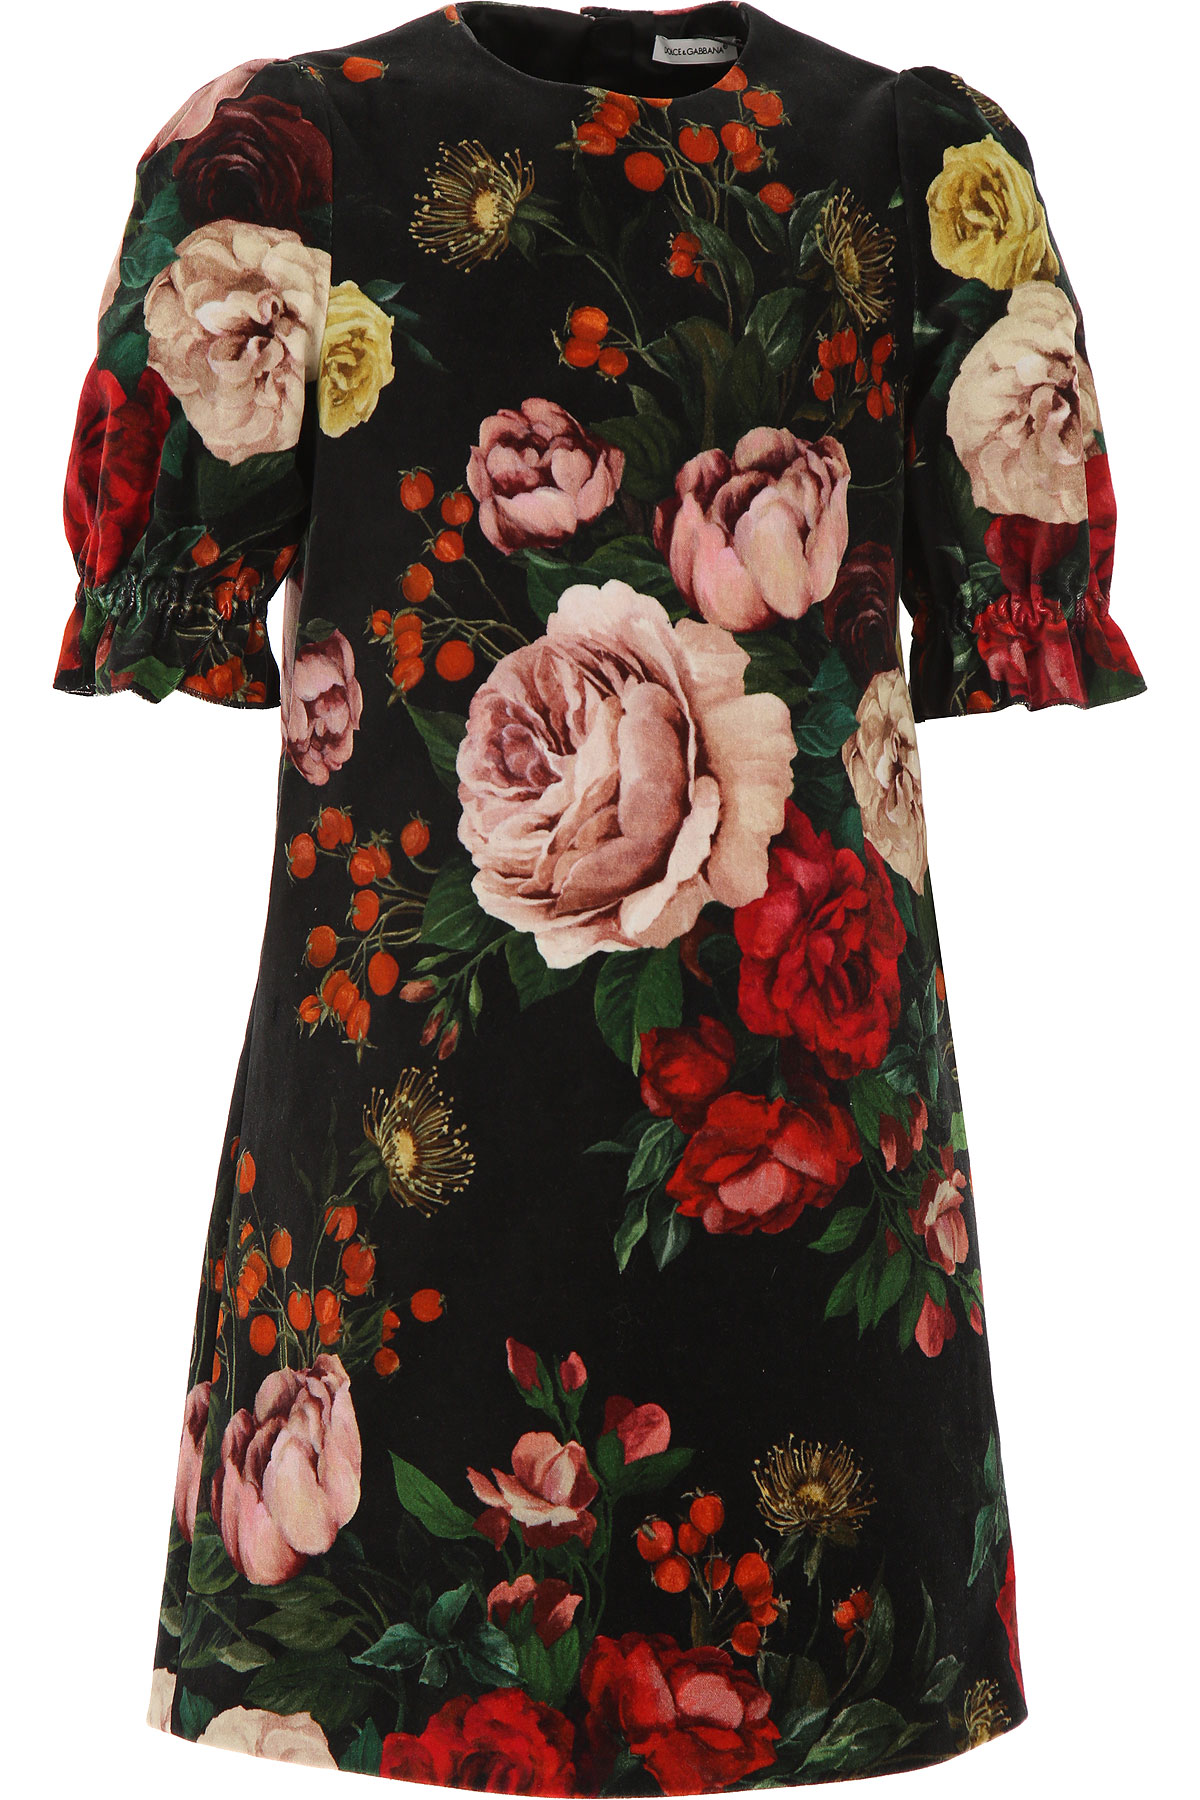 Dolce & Gabbana Kleid für Mädchen Günstig im Sale, Schwarz, Baumwolle, 2017, 10Y 8Y